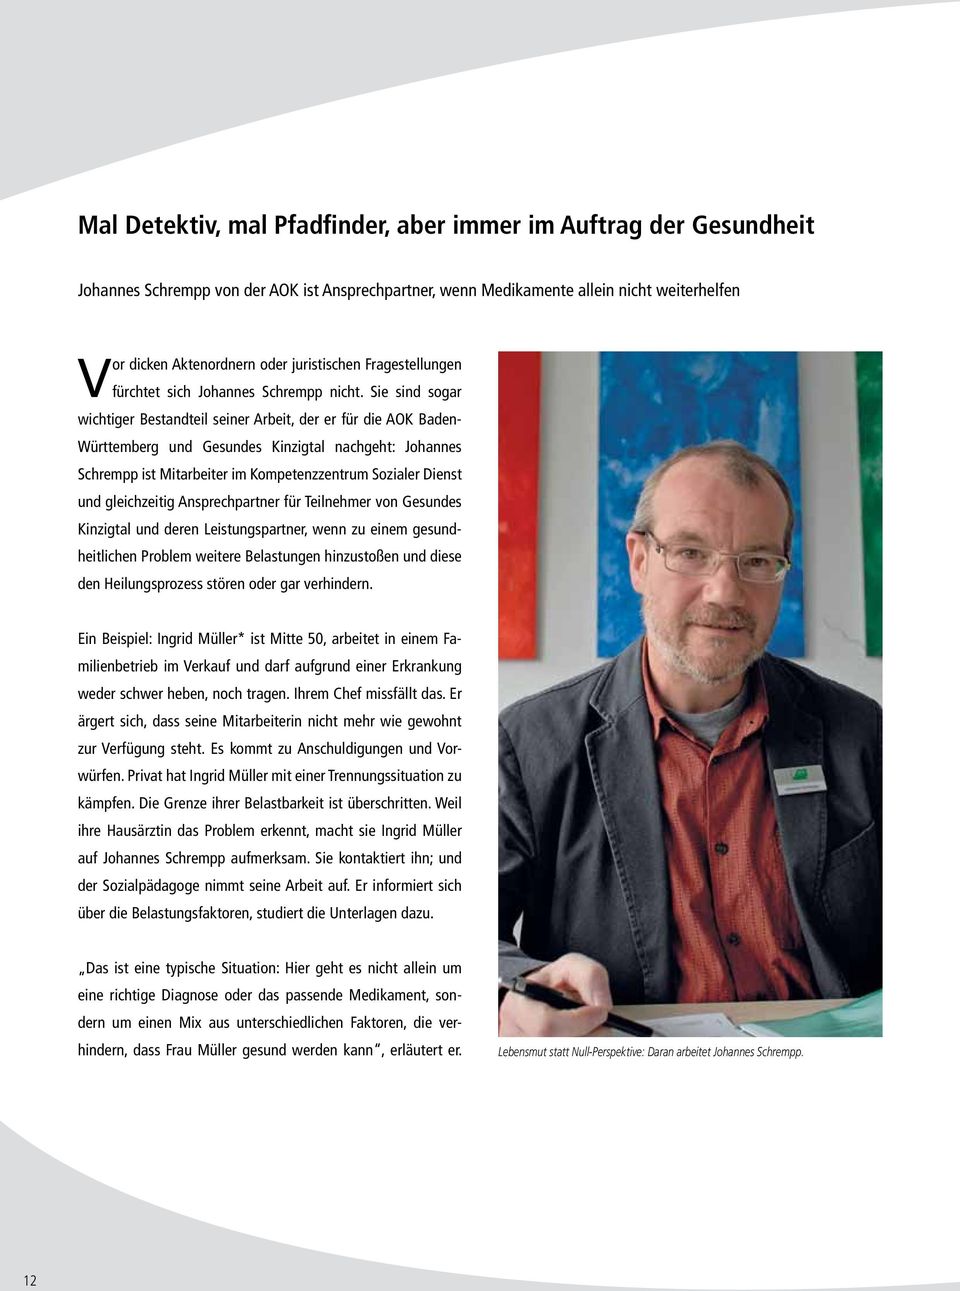 Sie sind sogar wichtiger Bestandteil seiner Arbeit, der er für die AOK Baden- Württemberg und Gesundes Kinzigtal nachgeht: Johannes Schrempp ist Mitarbeiter im Kompetenzzentrum Sozialer Dienst und